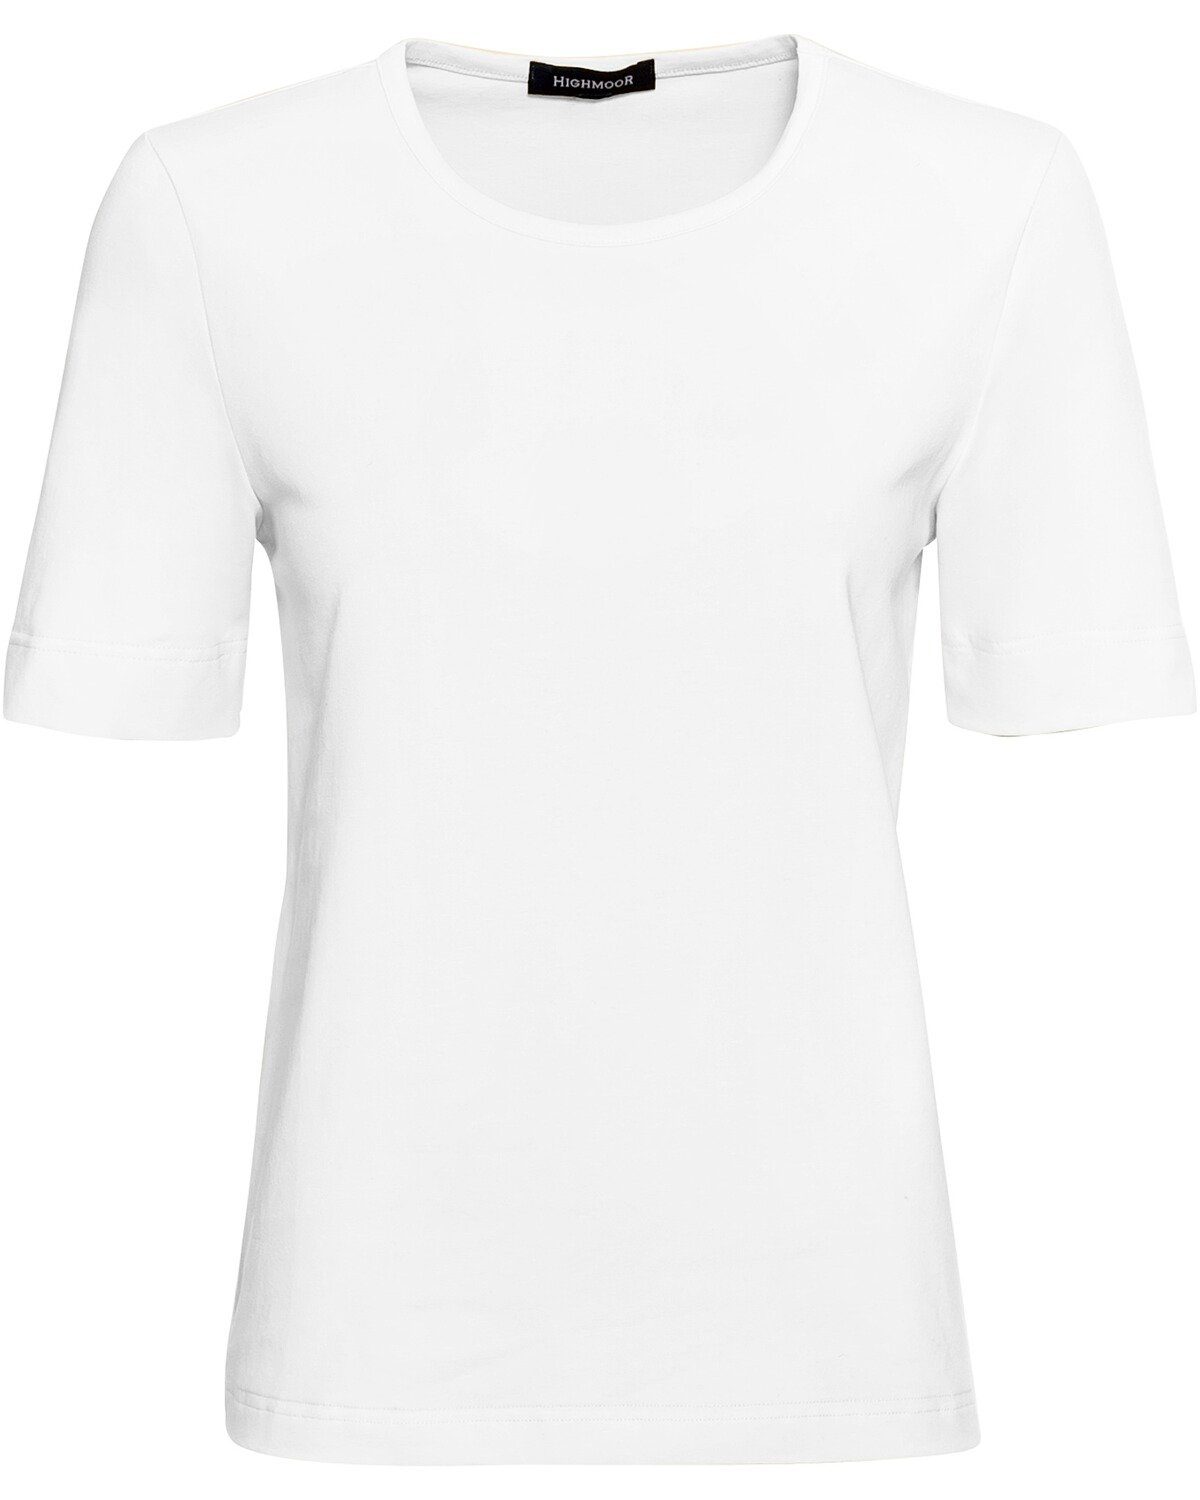 T-Shirt Rundhals Highmoor T-Shirt Weiß mit